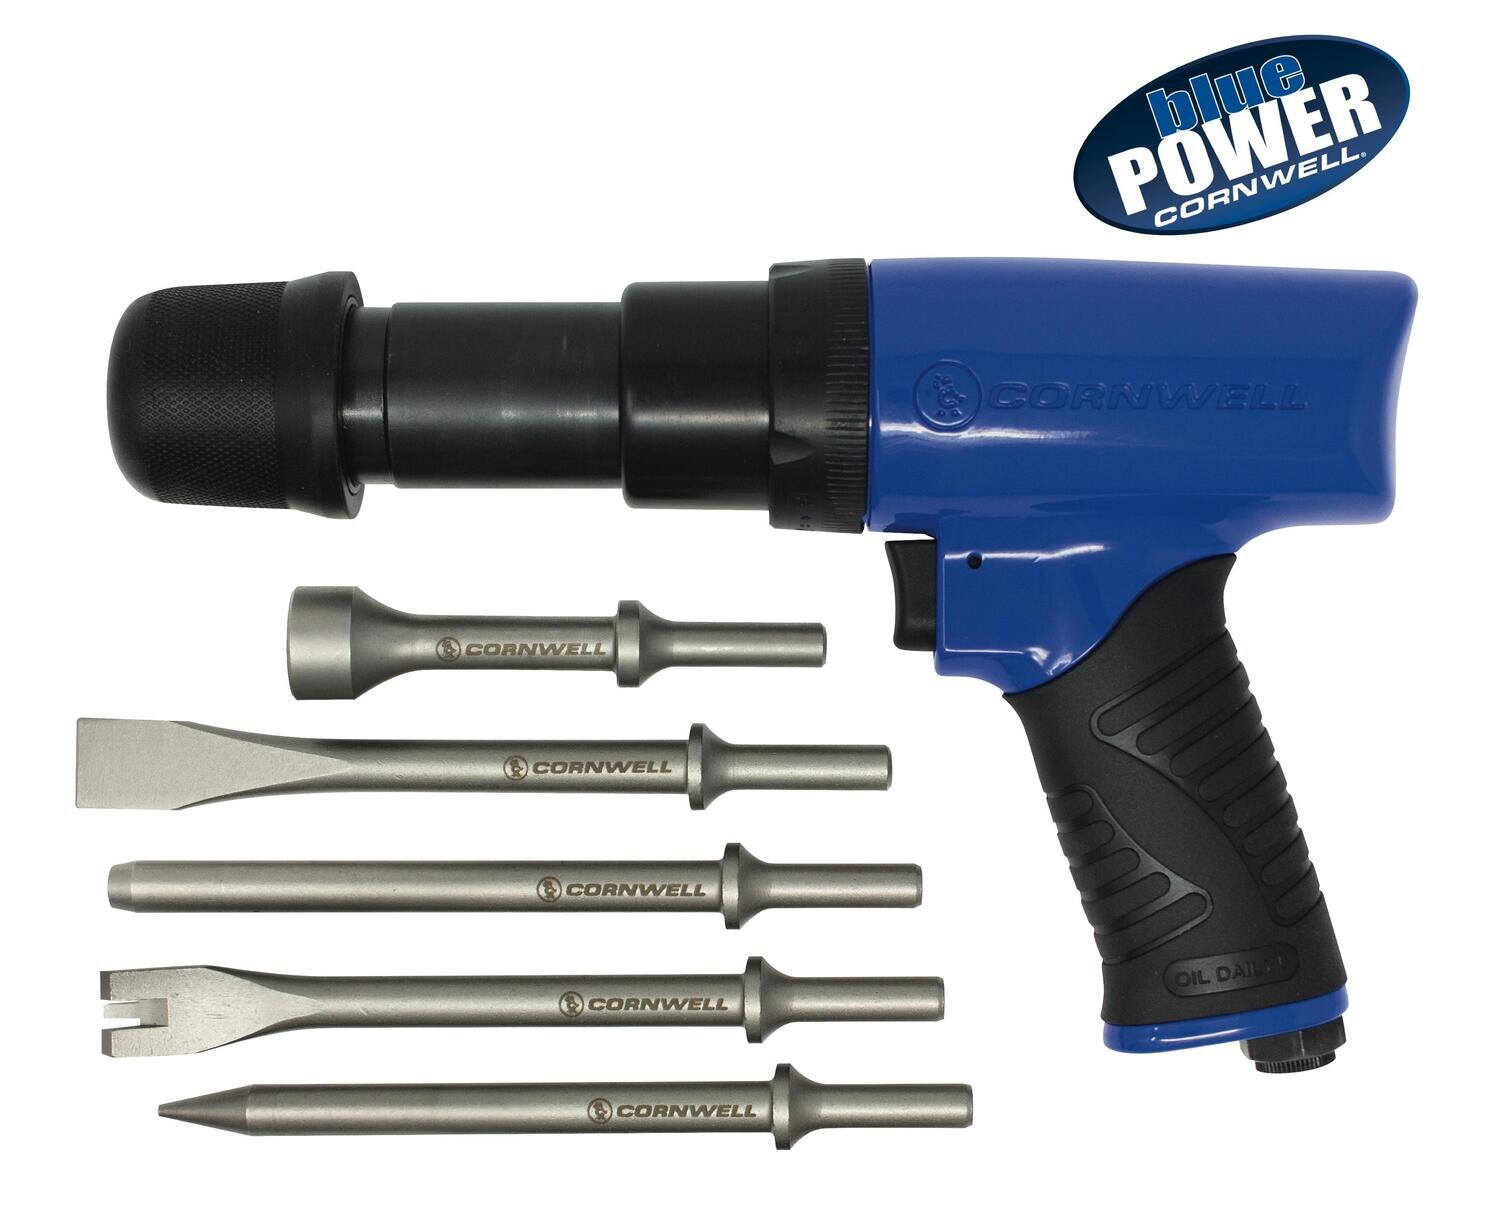 CAT7535AHBK - bluePOWER® Blue Air Hammer & 5 Piece Chisel Kit